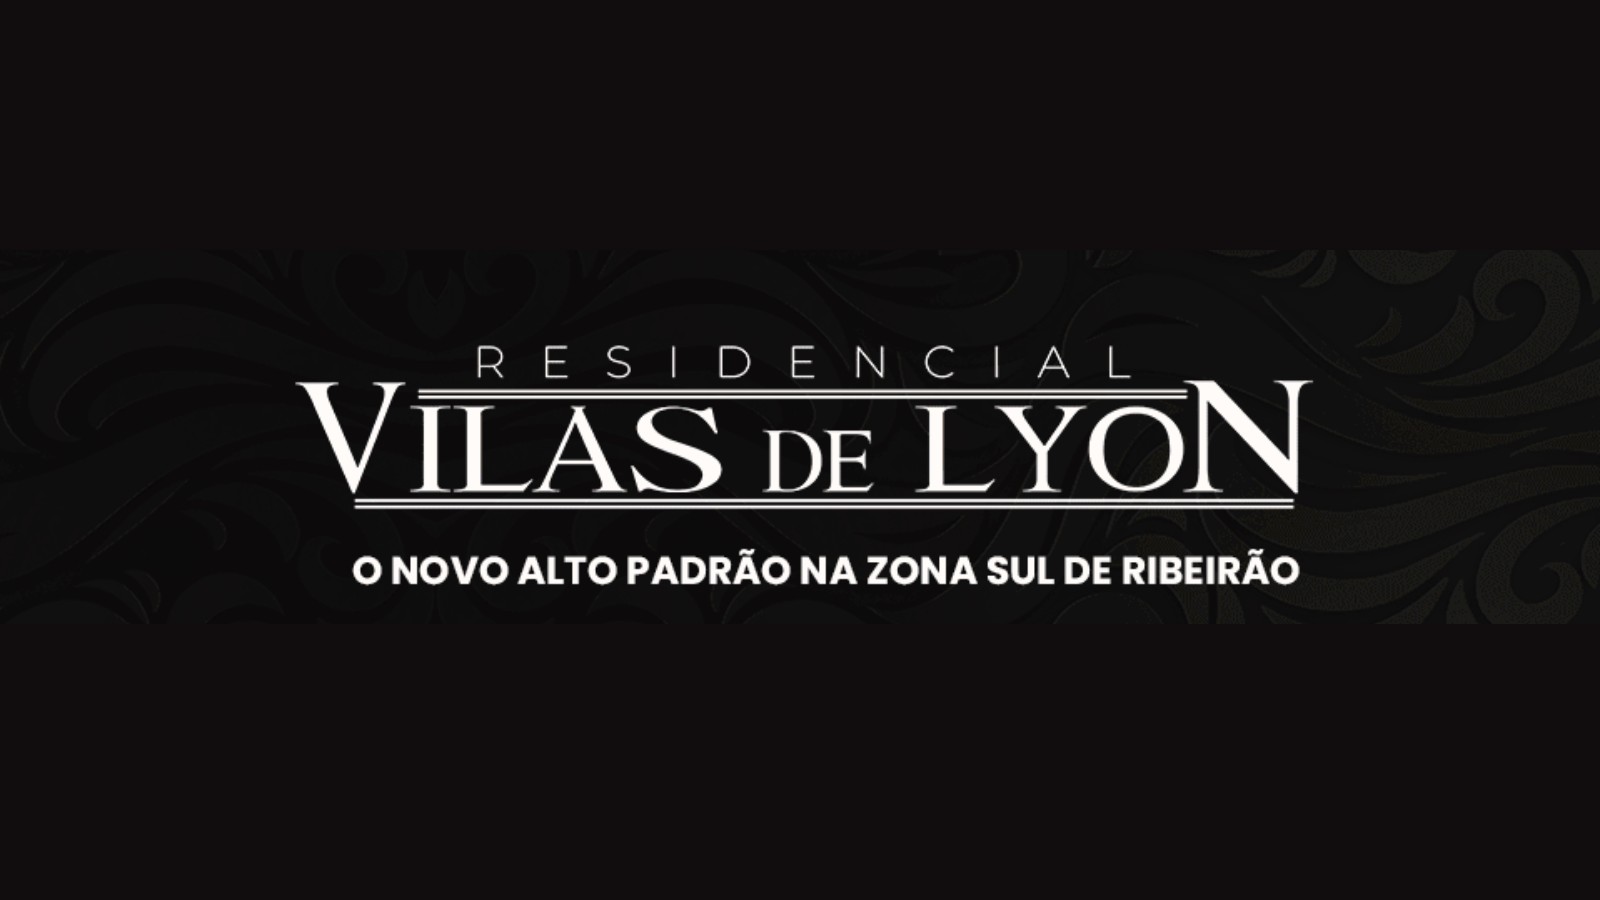 Vilas de Lyon: o novo padrão em residencial fechado na zona sul de Ribeirão Preto